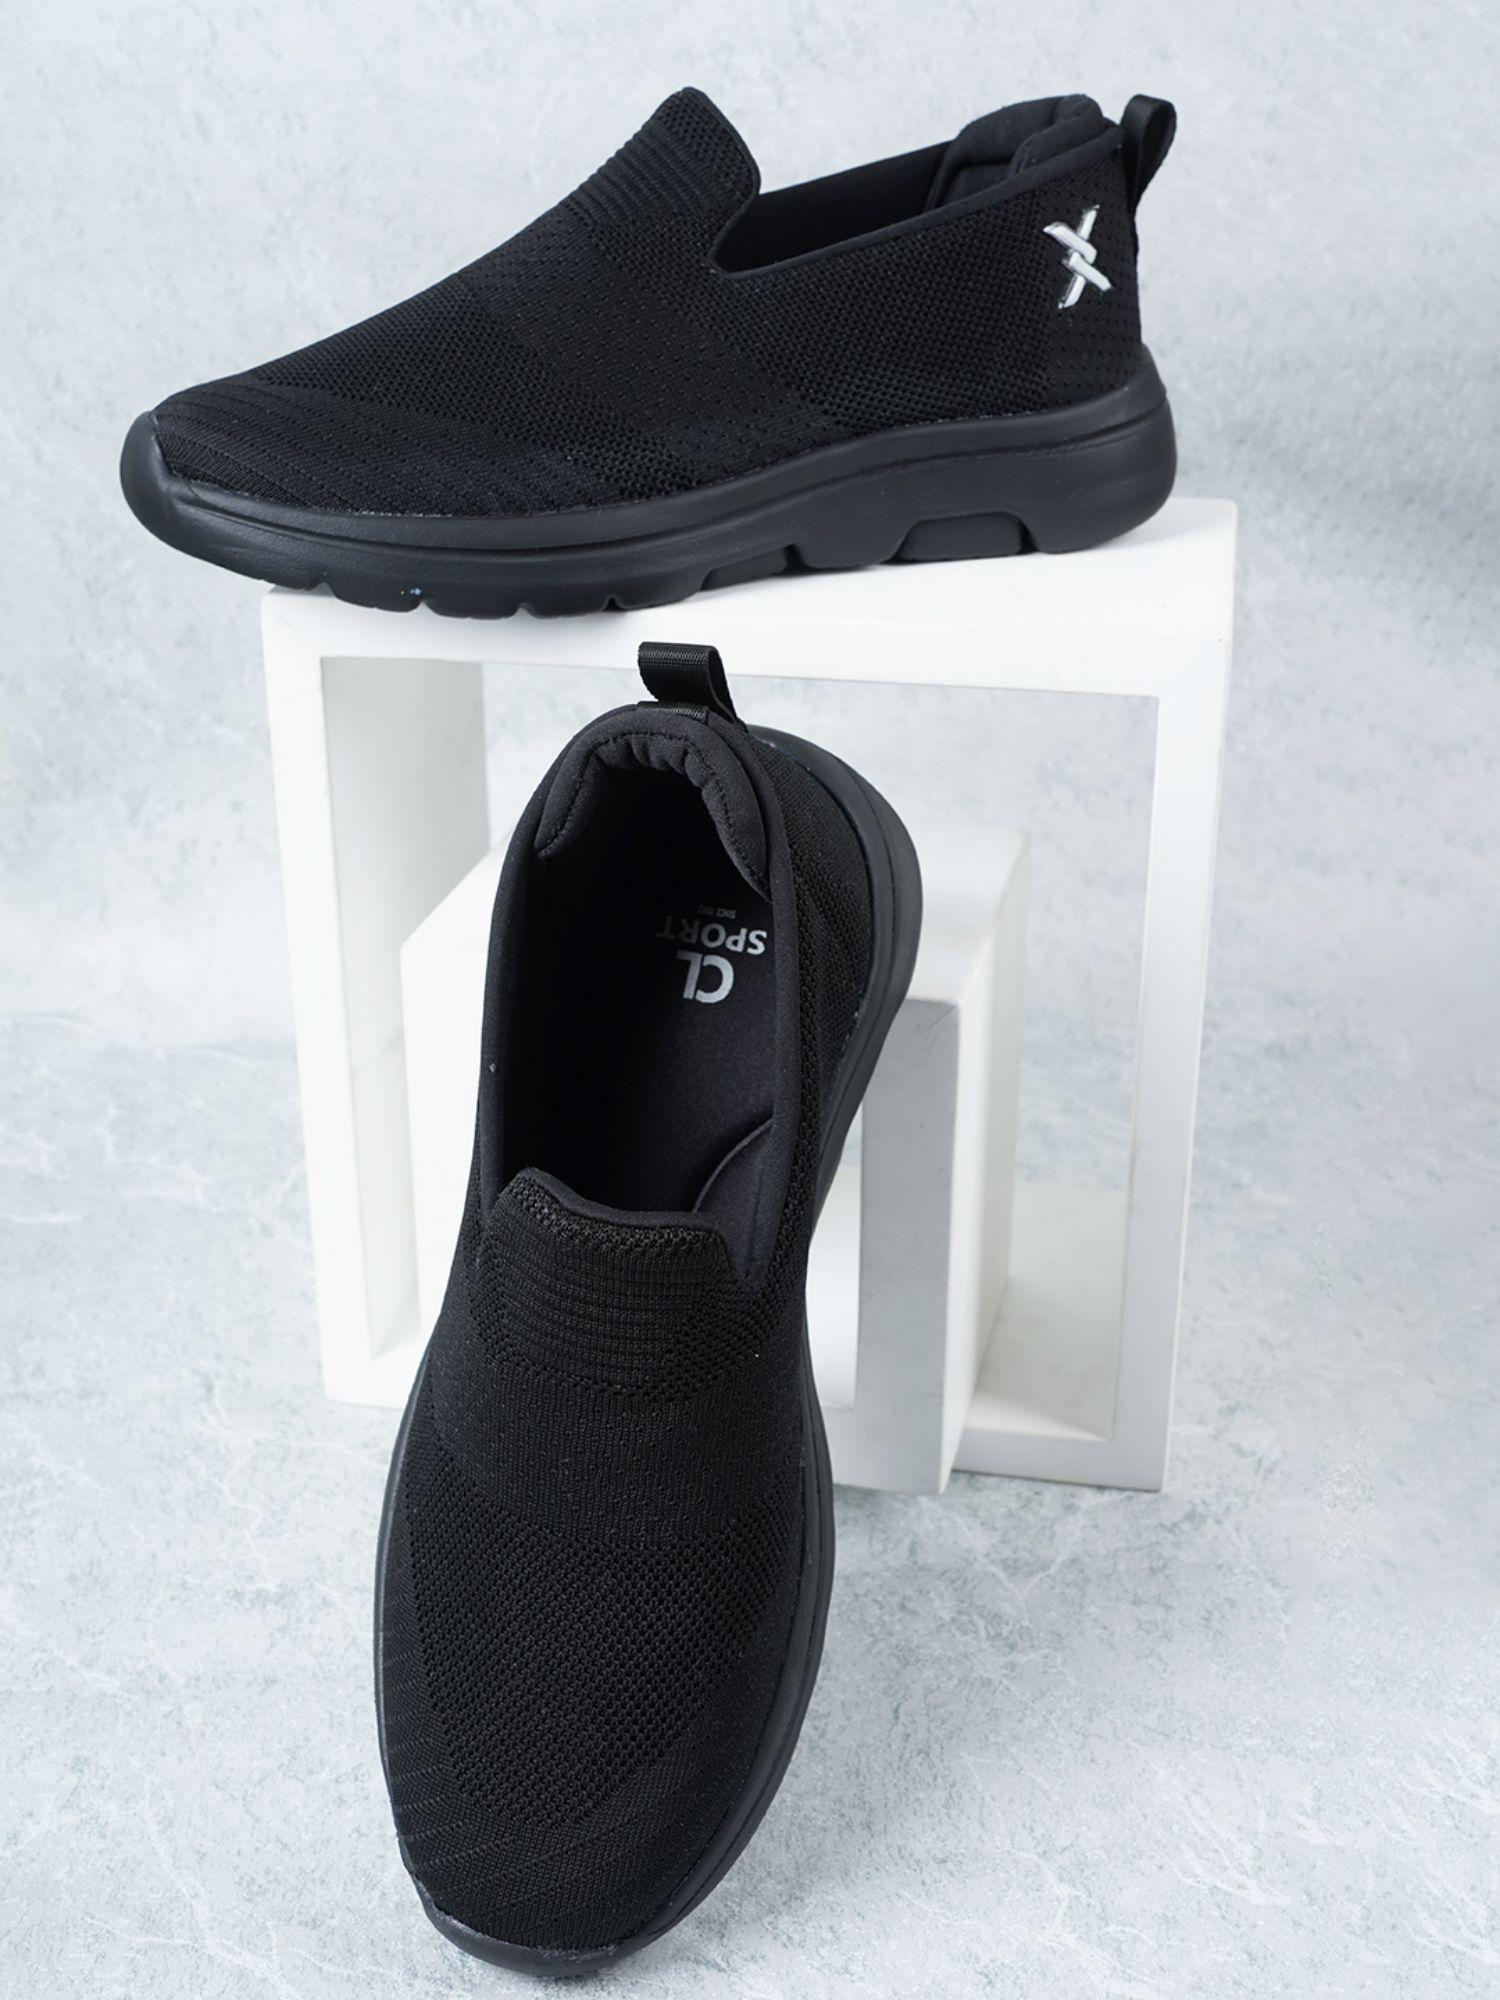 black-slip-on-woven-design-sneakers